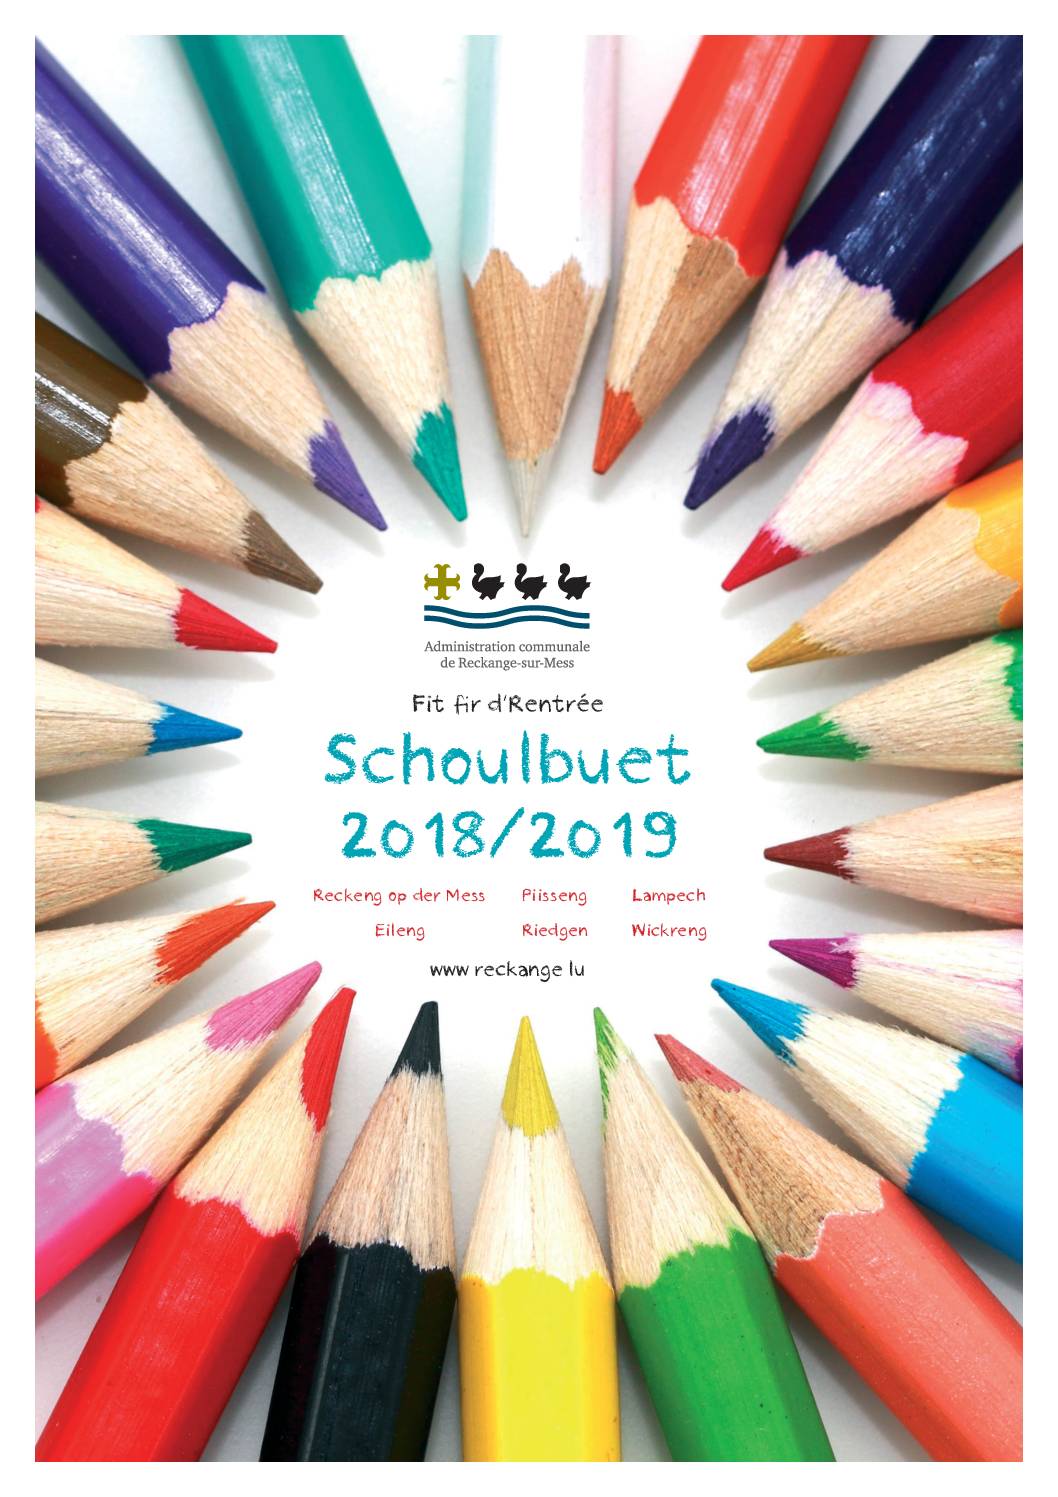 Schoulbuet 2018-2019